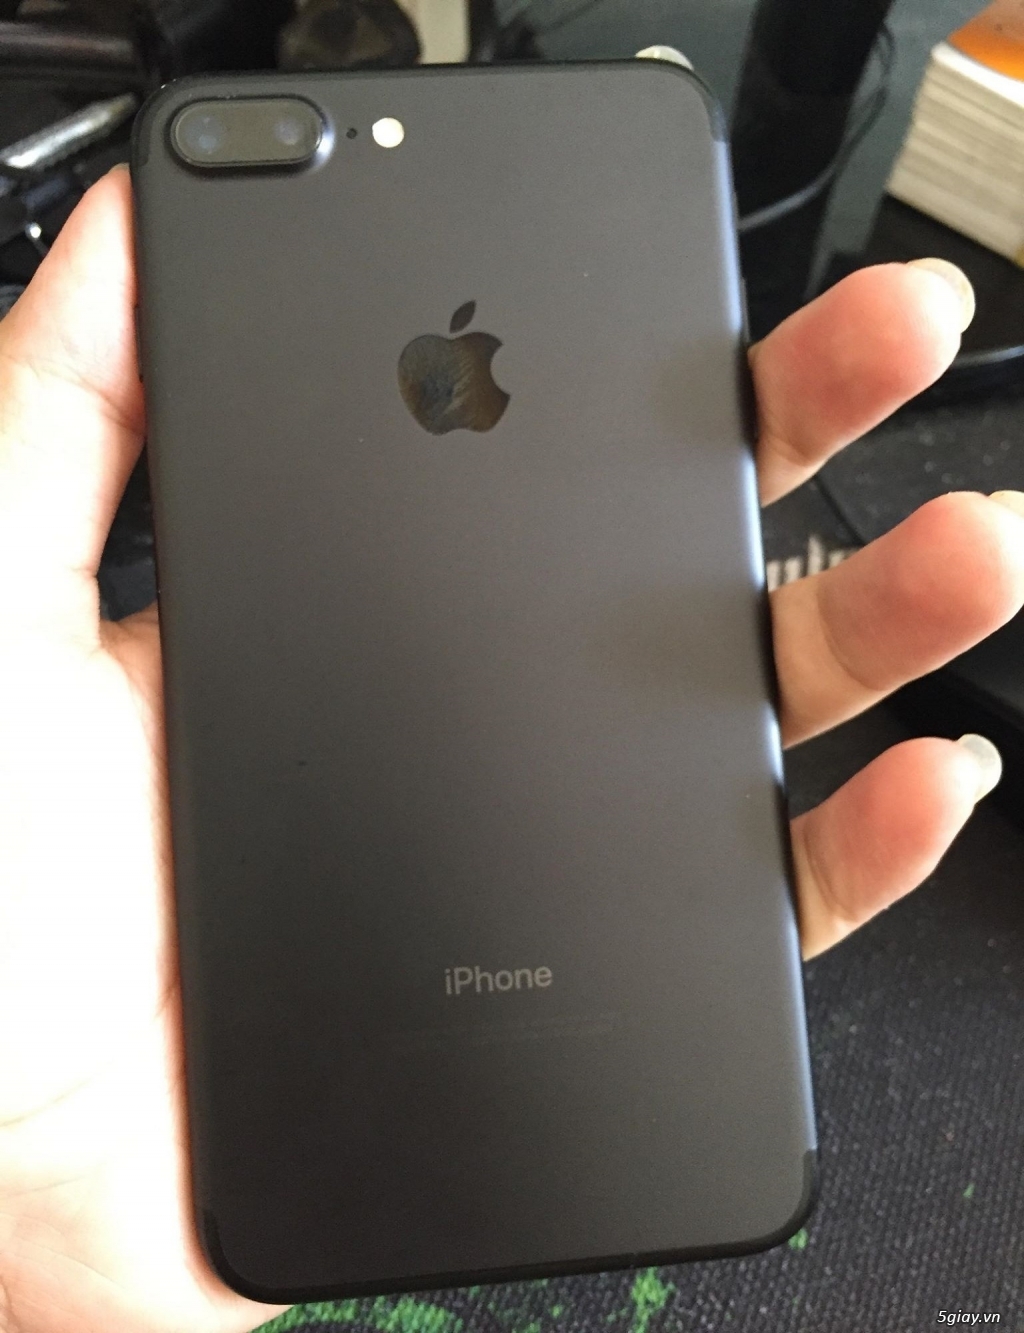 Với mức bộ nhớ 32gb quốc tế, iPhone 7 Plus đen nhám là lựa chọn hoàn hảo cho những ai đang tìm kiếm một chiếc điện thoại vừa đẹp vừa tiện dụng. Hãy xem hình ảnh để cảm nhận thêm vẻ đẹp và sự hiệu quả của chiếc điện thoại này.